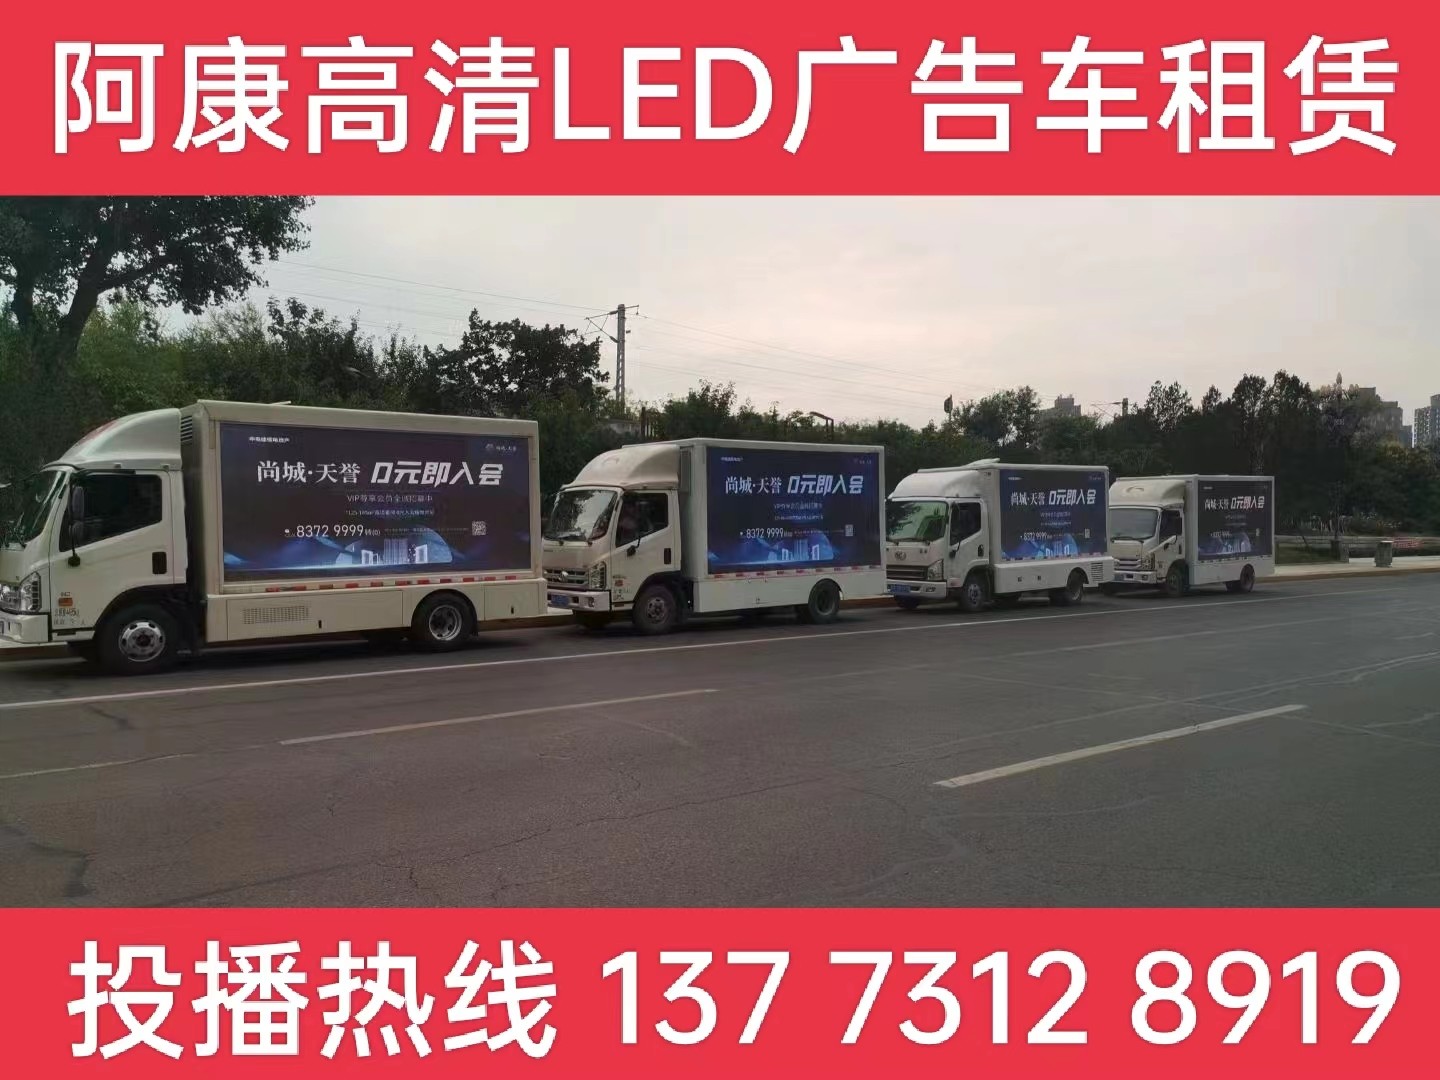 嘉兴LED广告车出租公司